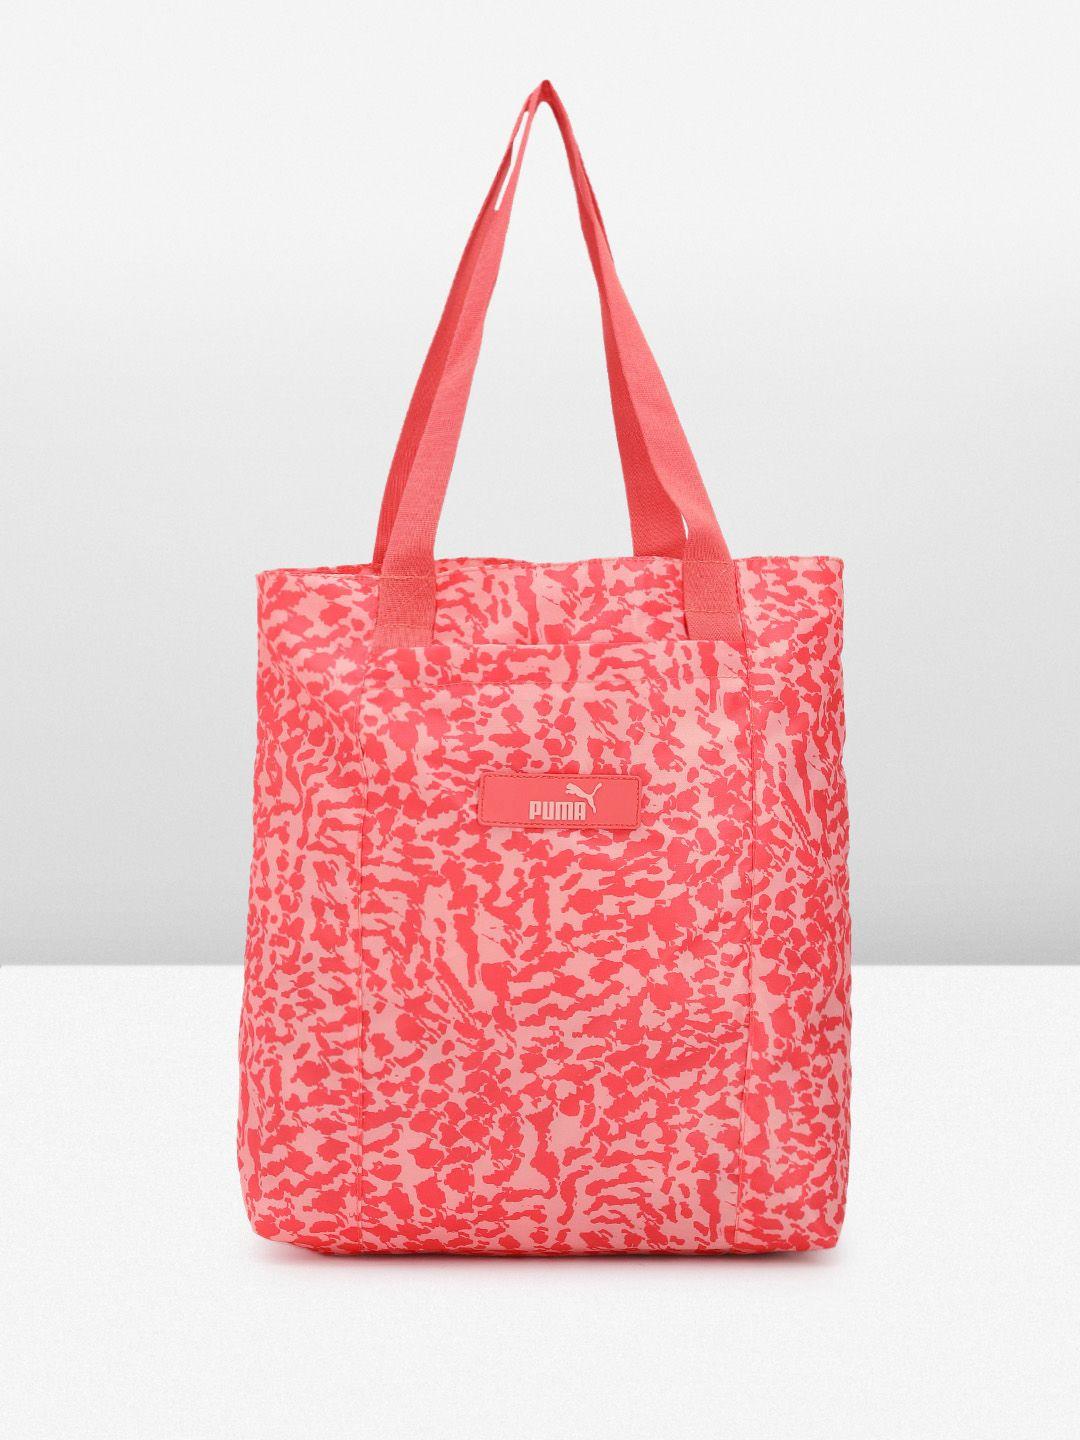 Puma Core Pop Printed Shopper Tote Bag